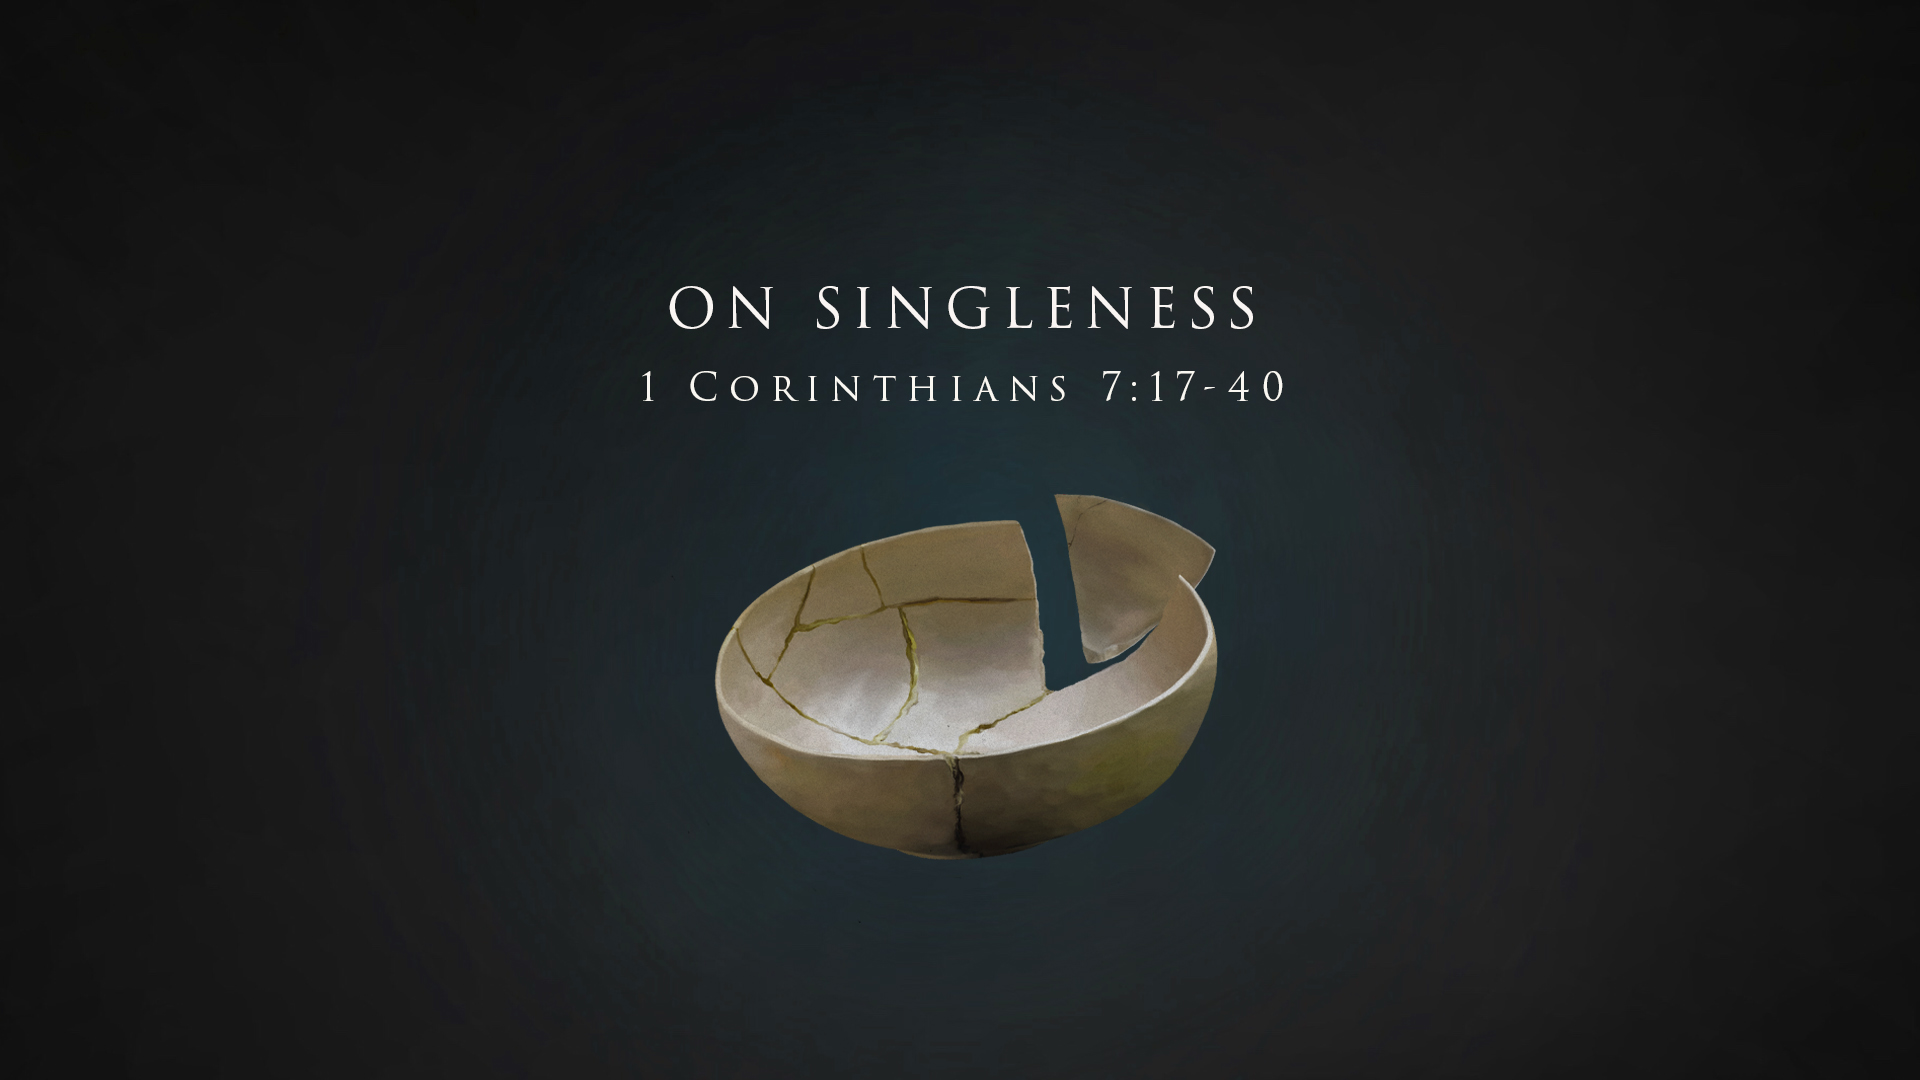 On Singleness